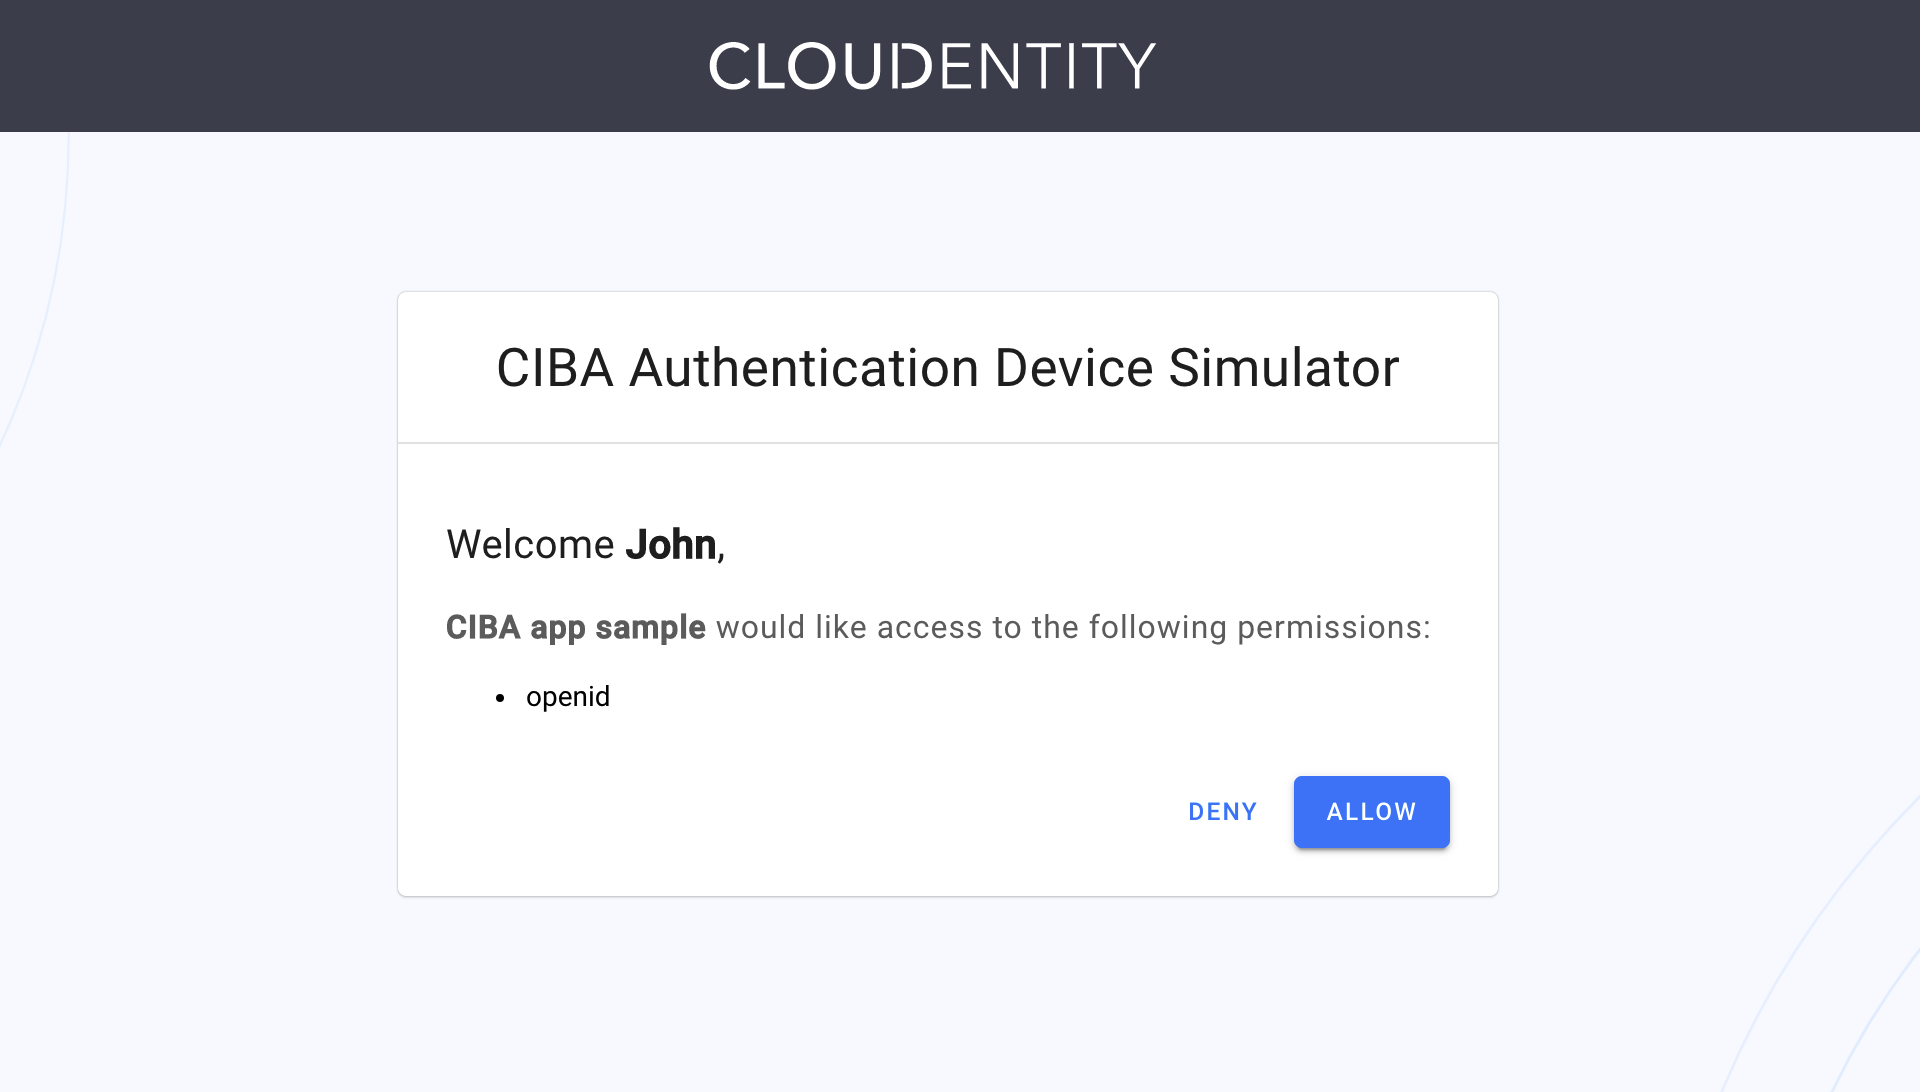 CIBA Simulator consent screen